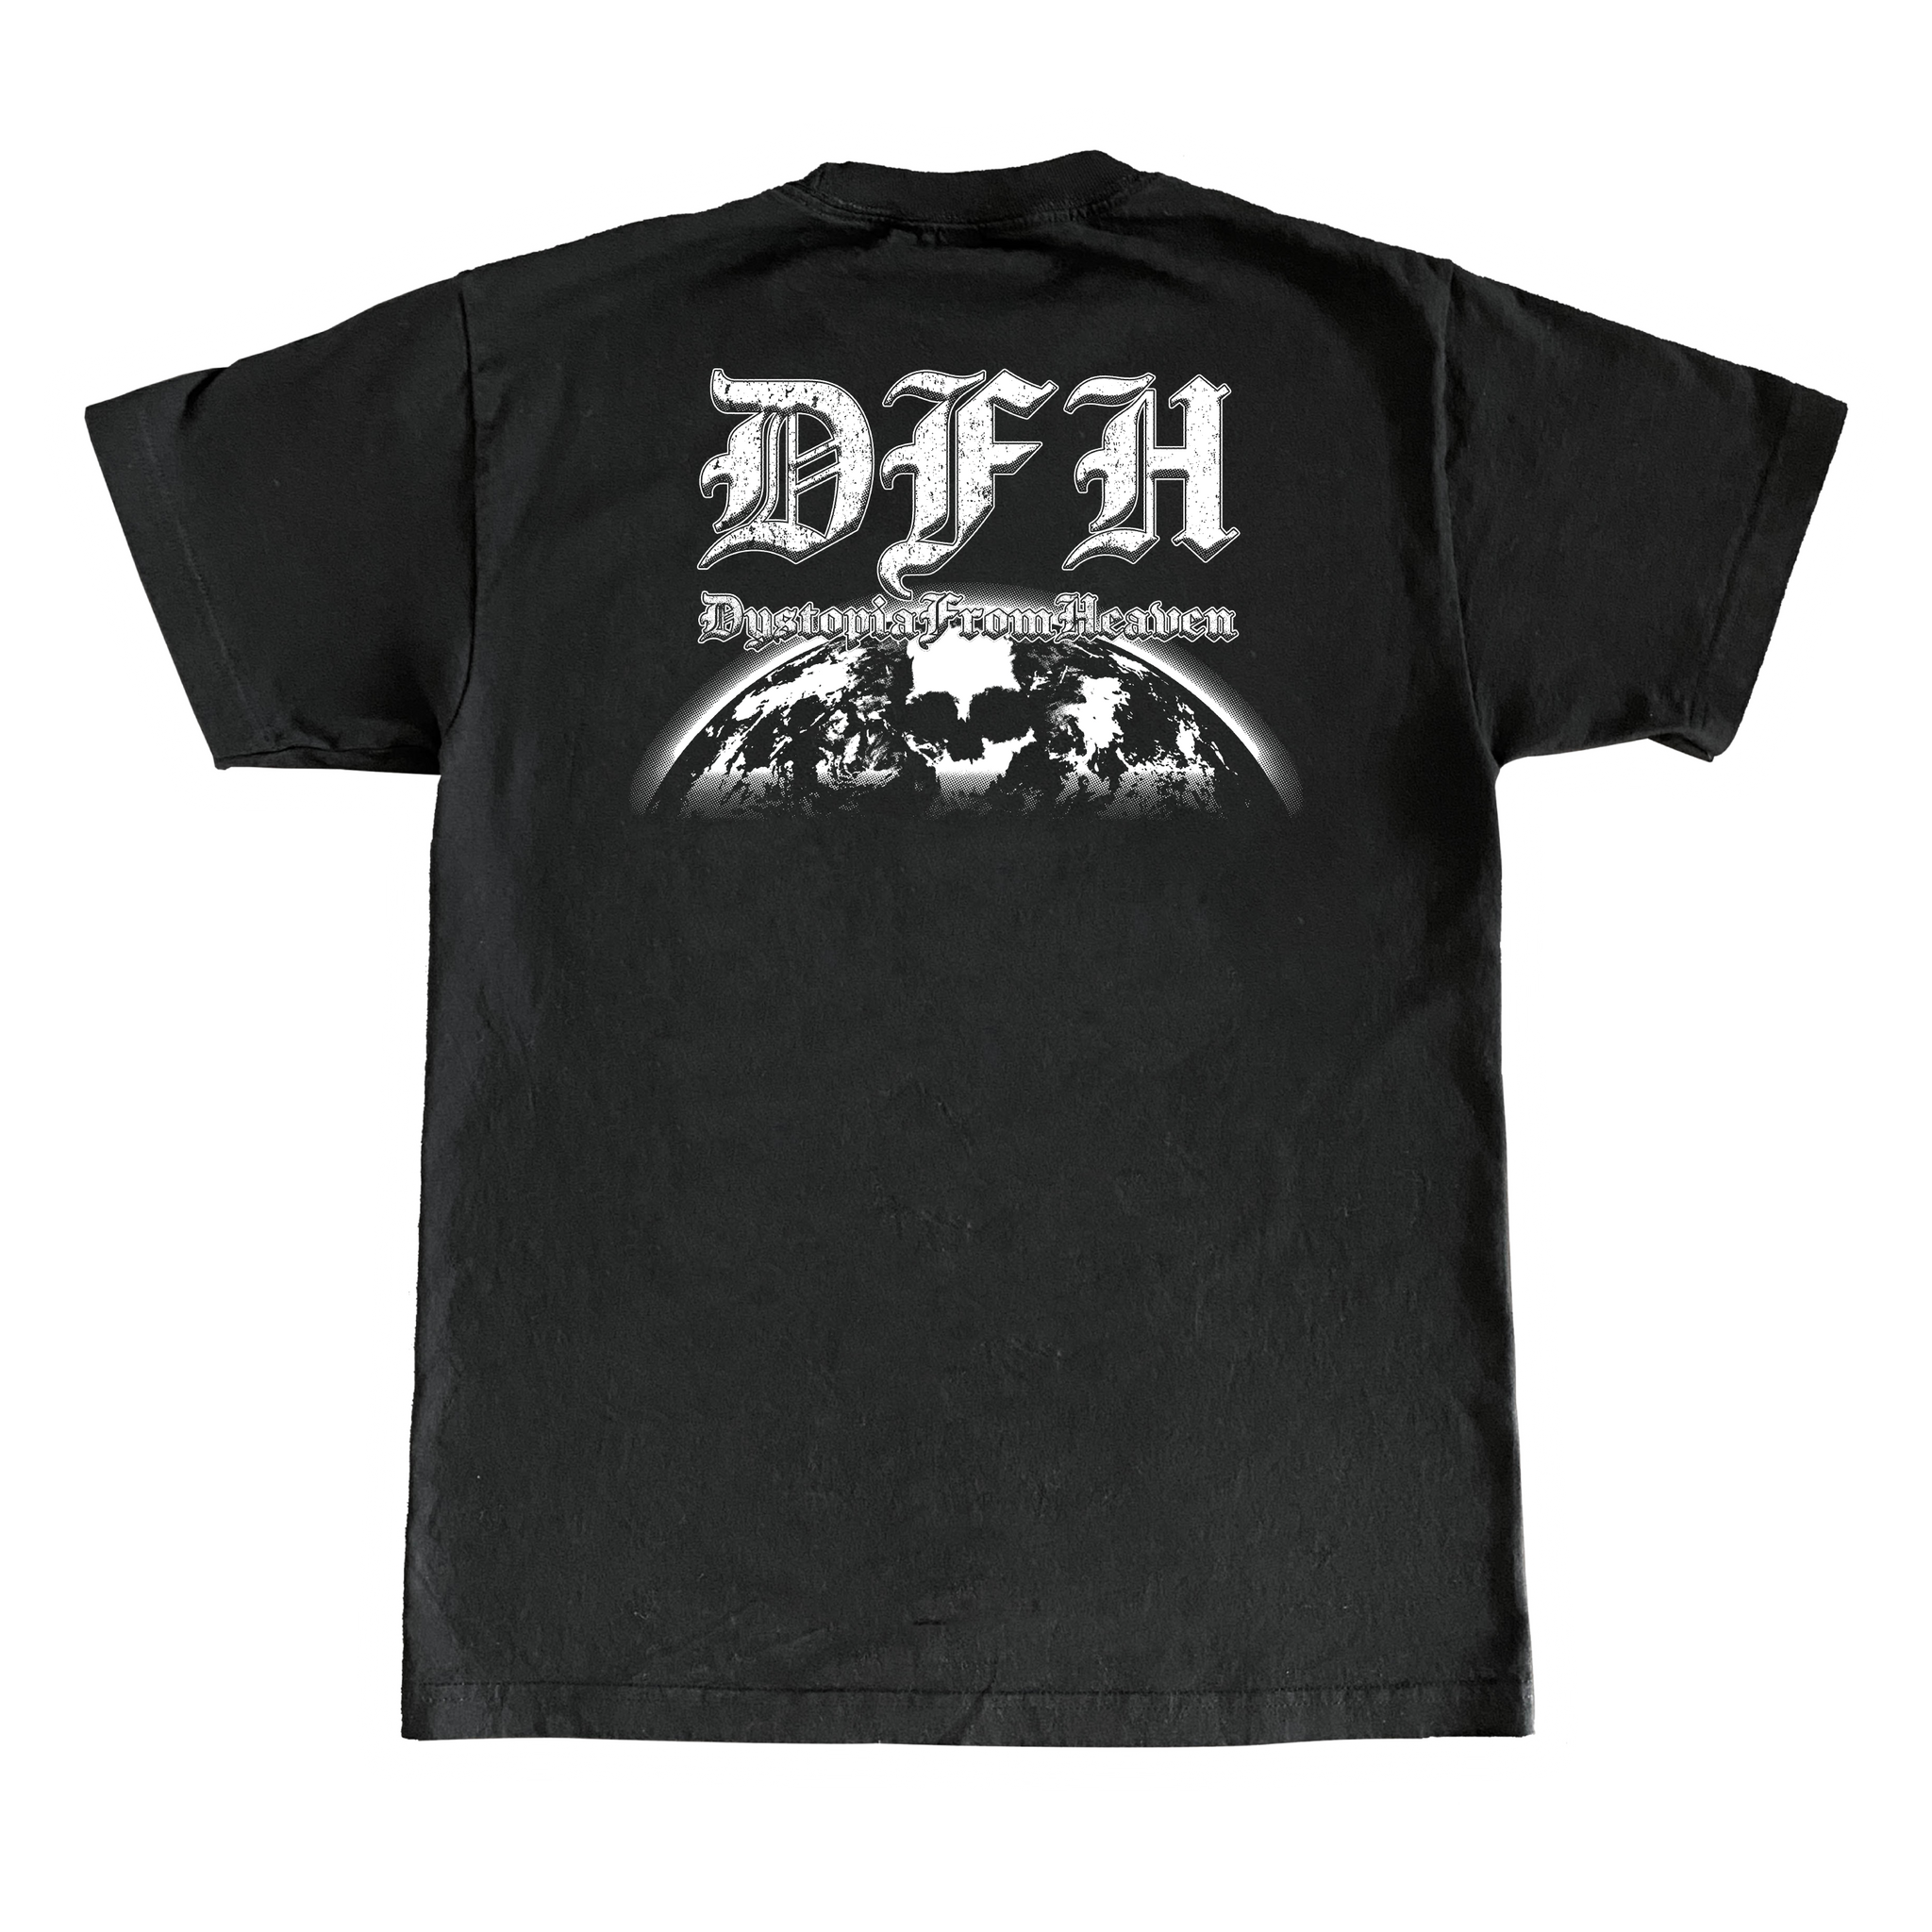 DFH Logo